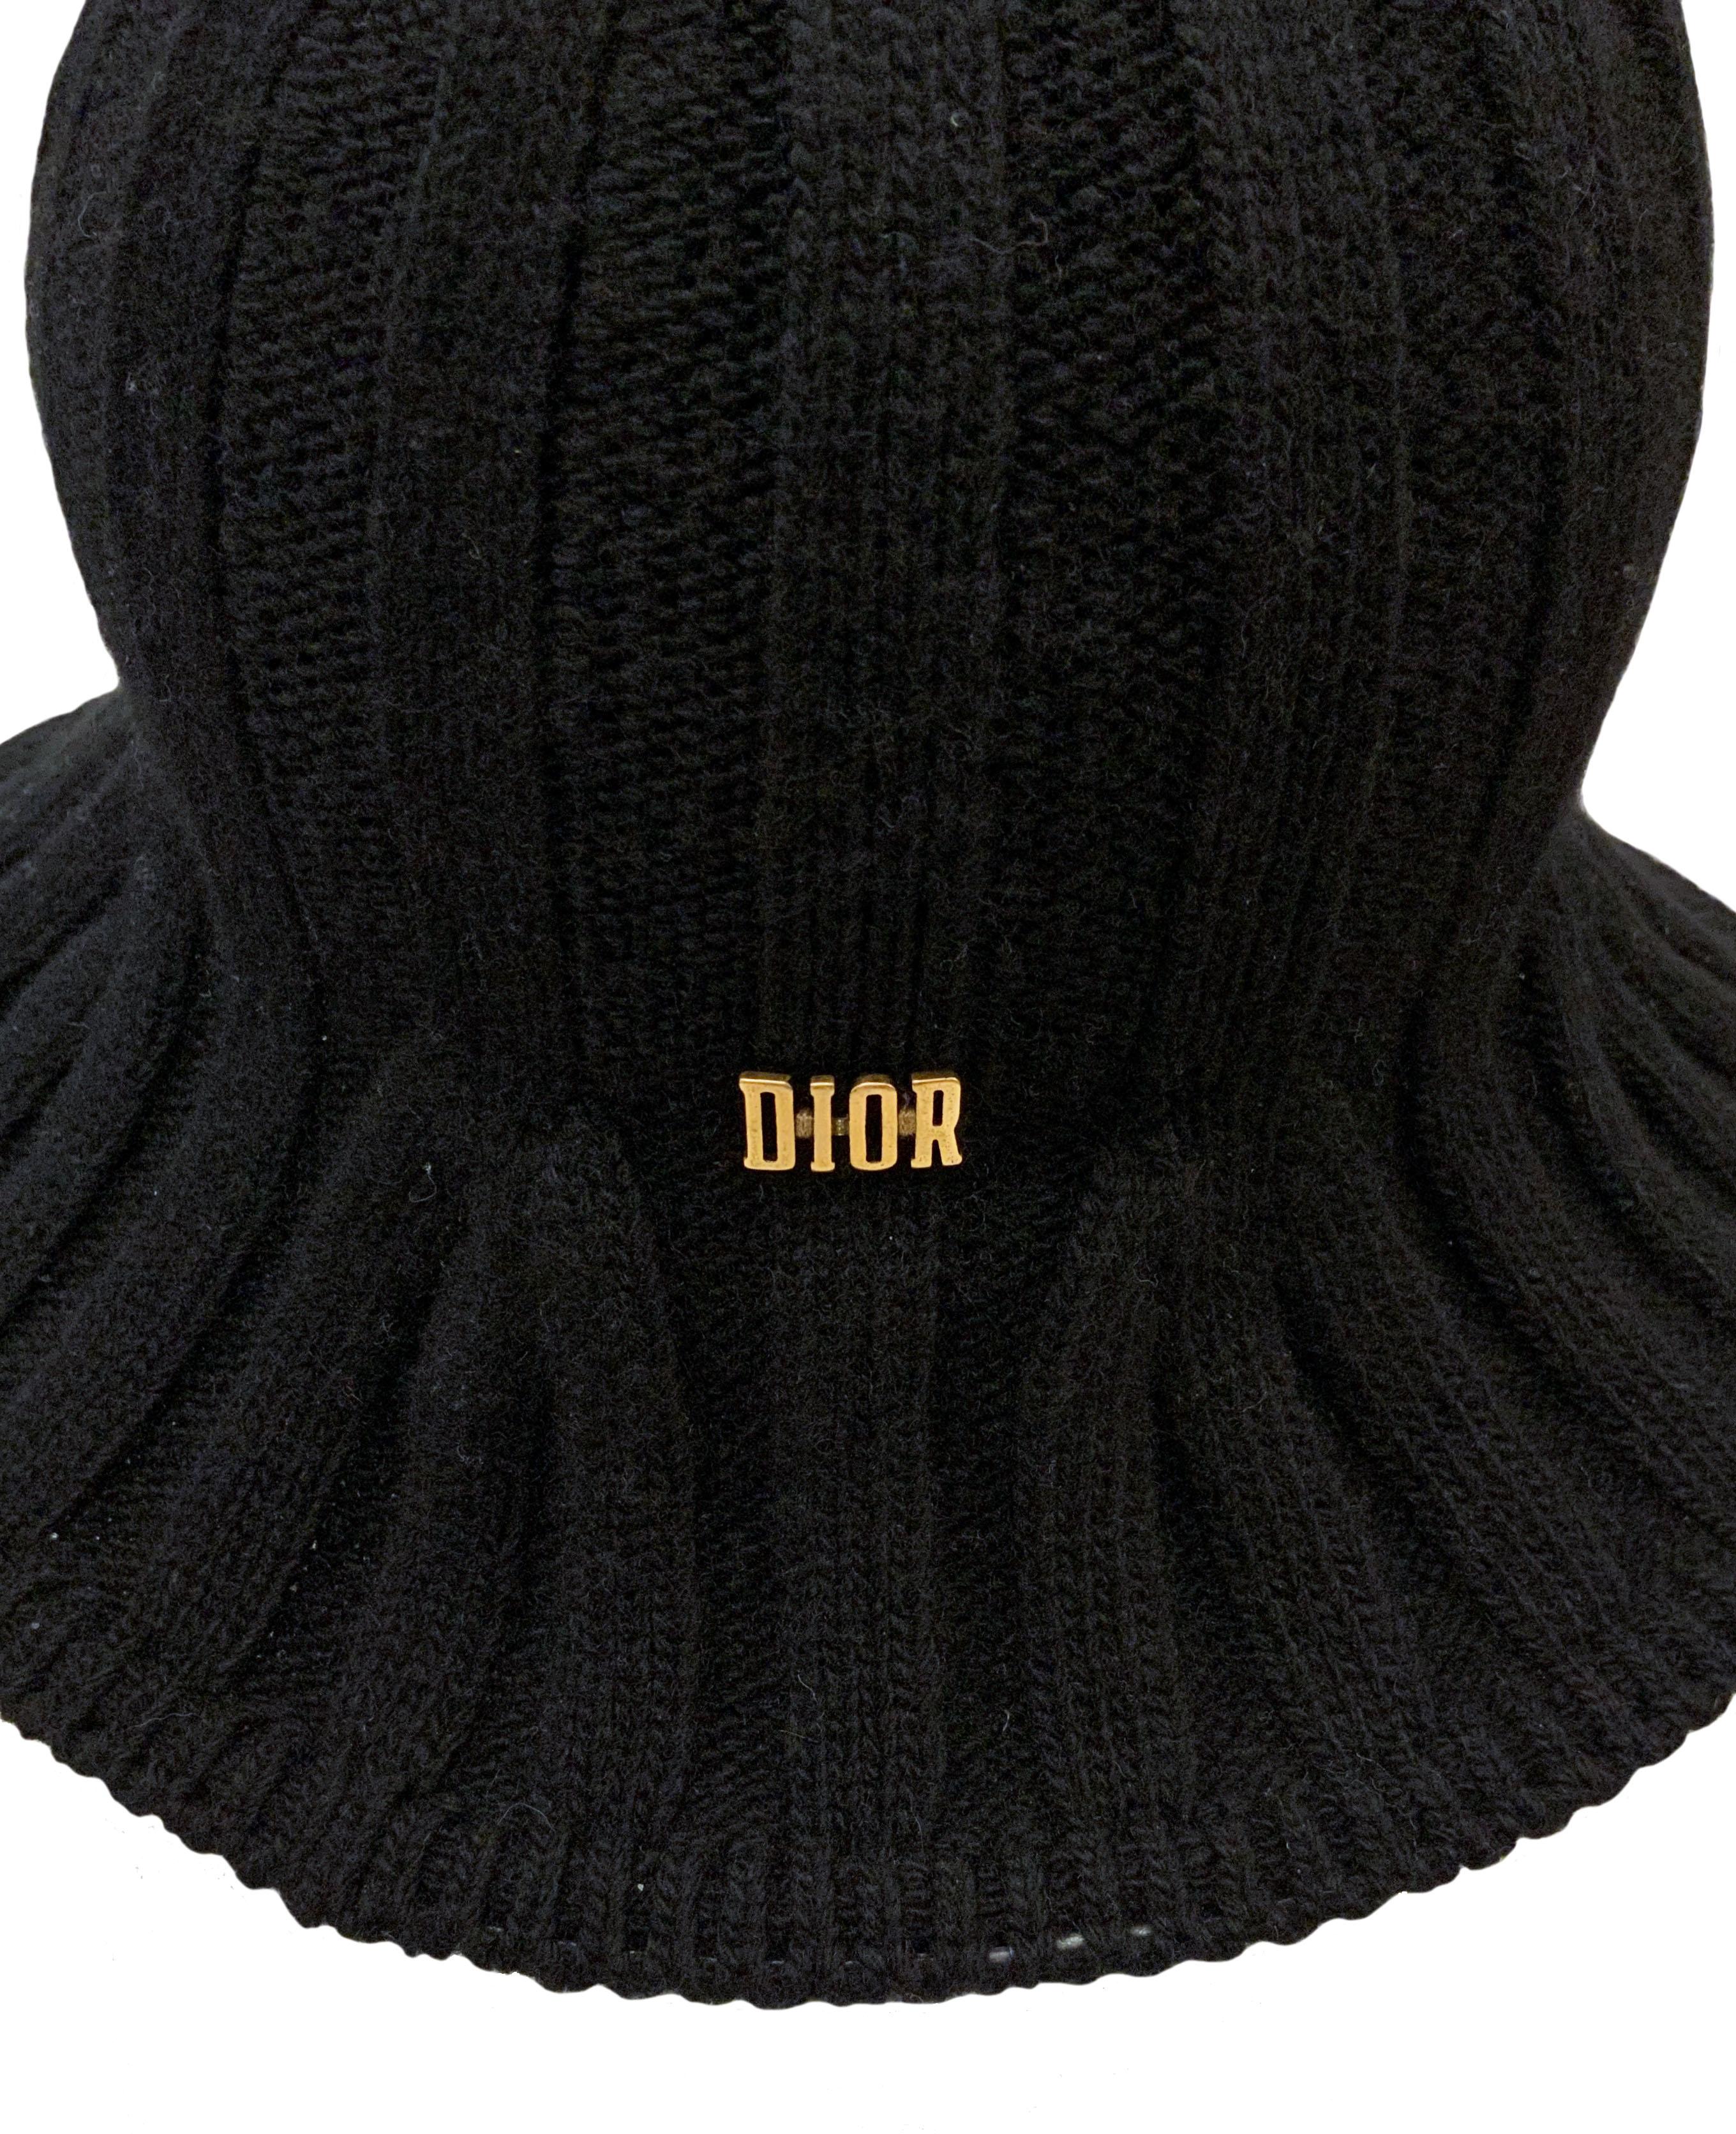 dior knit hat